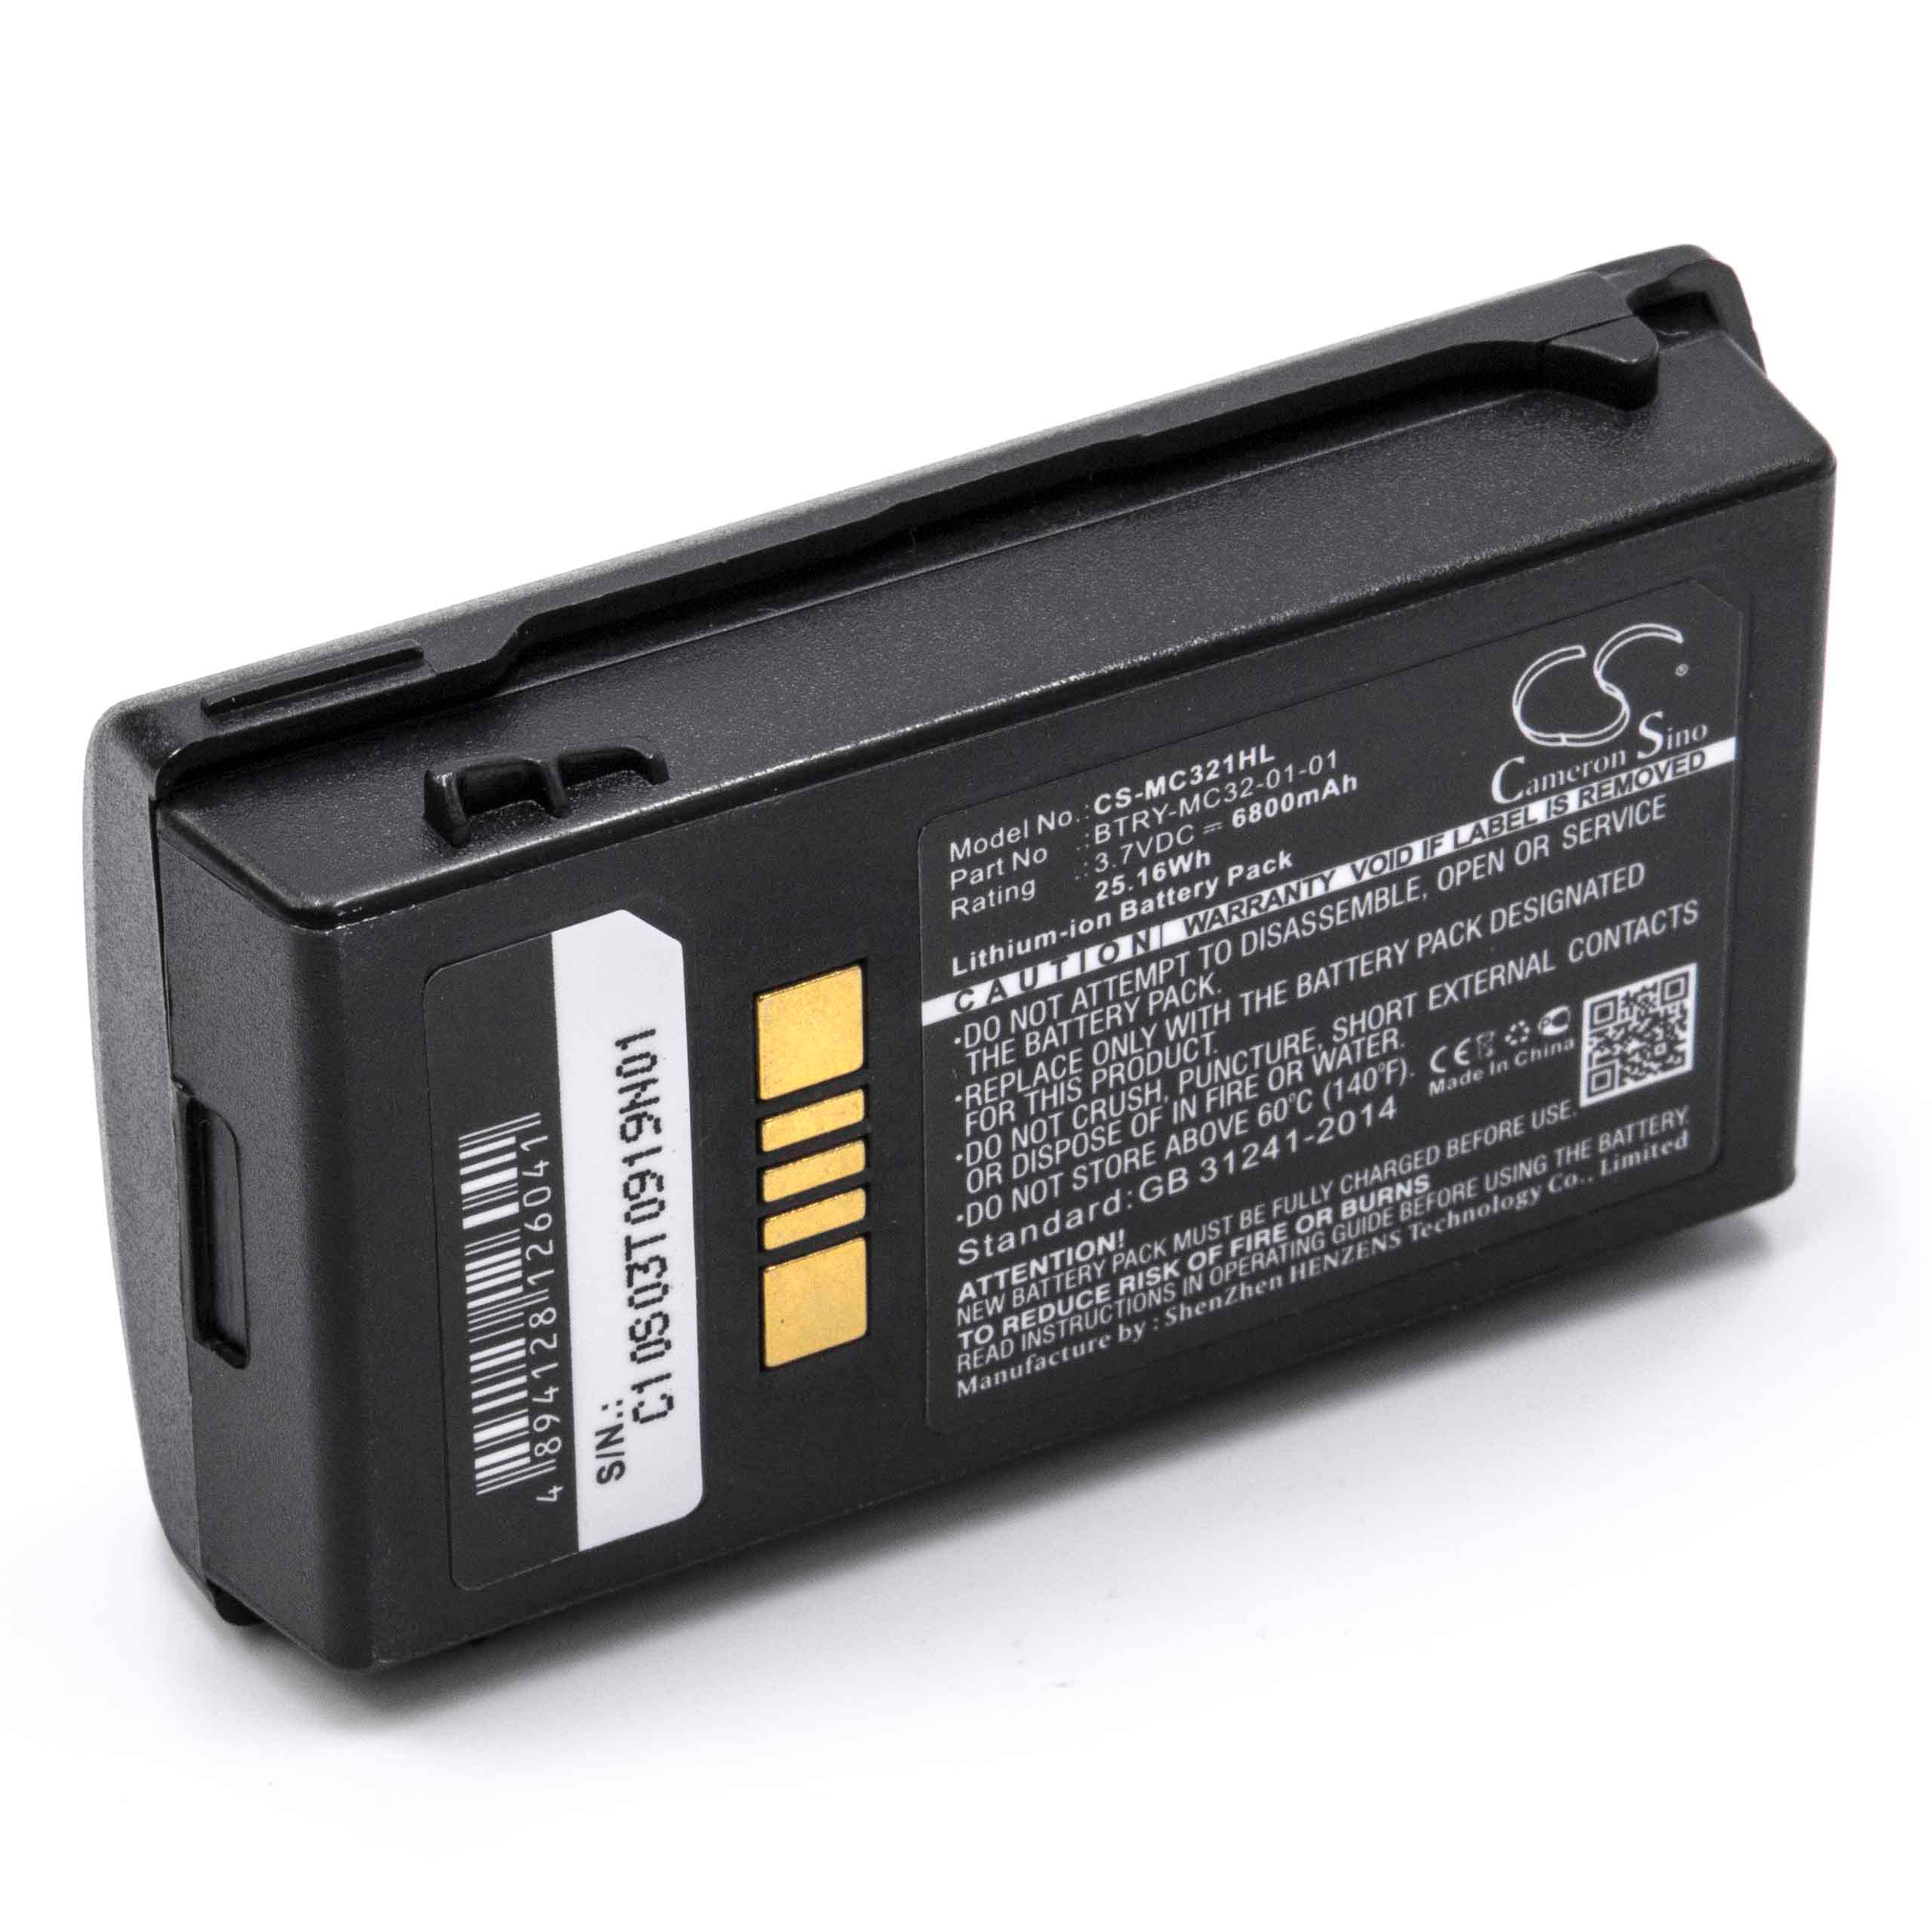 Batteria per lettore di codici a barre, POS sostituisce Motorola BTRY-MC32-01-01 - 6800mAh, 3,7V Li-Ion